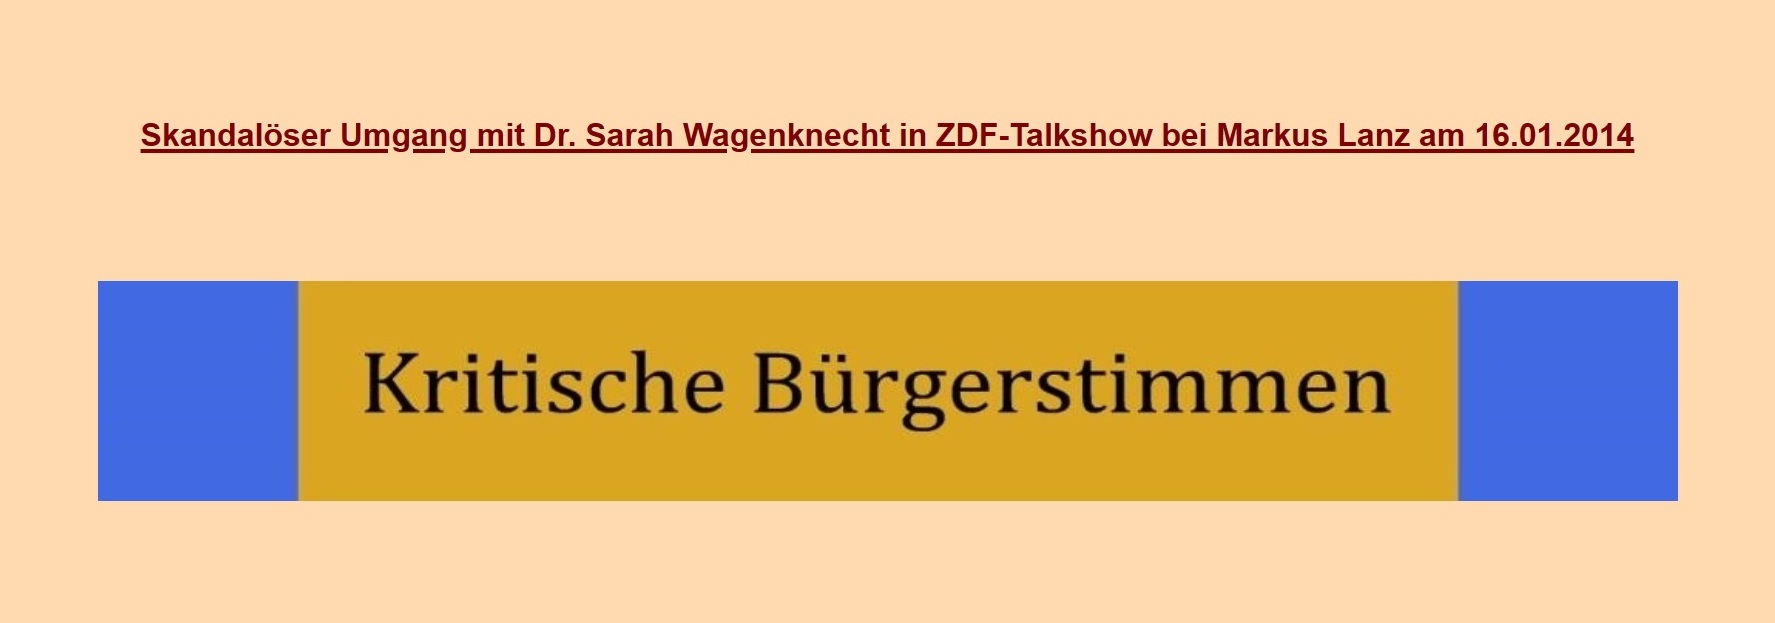 Kritische Brgerstimmen - Skandalser Umgang mit Sarah Wagenknecht in Talkshow von Markus Lanz im ZDF am 16.01.2014 / Lieber Genosse Kreitlow, auch wenn es schon eine Weile zurckliegt, mchte ich mich herzlich fr die Weiterleitung Deines Petitionseintrags anlsslich meines Auftritts bei Markus Lanz am 16.1.2014 bedanken. Was die Gesprchsfhrung in der Sendung betrifft, so hat sich Herr Lanz inzwischen bei mir entschuldigt. Mit solidarischen Gren Sahra 